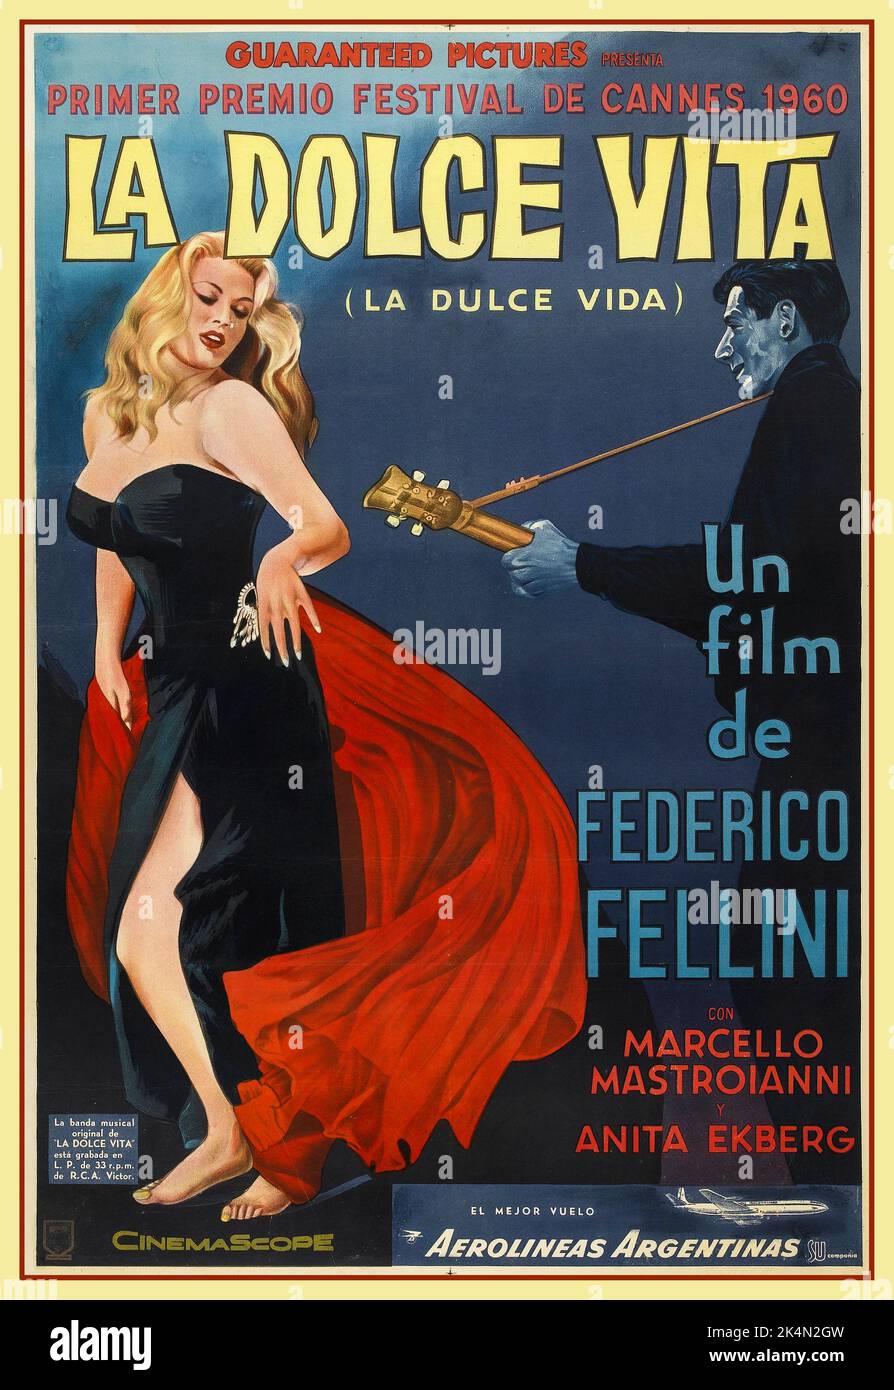 LA DOLCE VITA Cartel de cine italiano para 'The Sweet Life' o 'The Good Life' de 1960, una película de comedia dramática dirigida y co-escrita por Federico Fellini. La película sigue a Marcello Rubini (Marcello Mastroianni), un periodista que escribe para revistas de chismes, en su viaje por la 'vida cotidiana' de Roma en una búsqueda infructuosa de amor y felicidad. El guión, fue co-escrito por Fellini y otros tres guionistas. Festival de Cannes 1960 Foto de stock